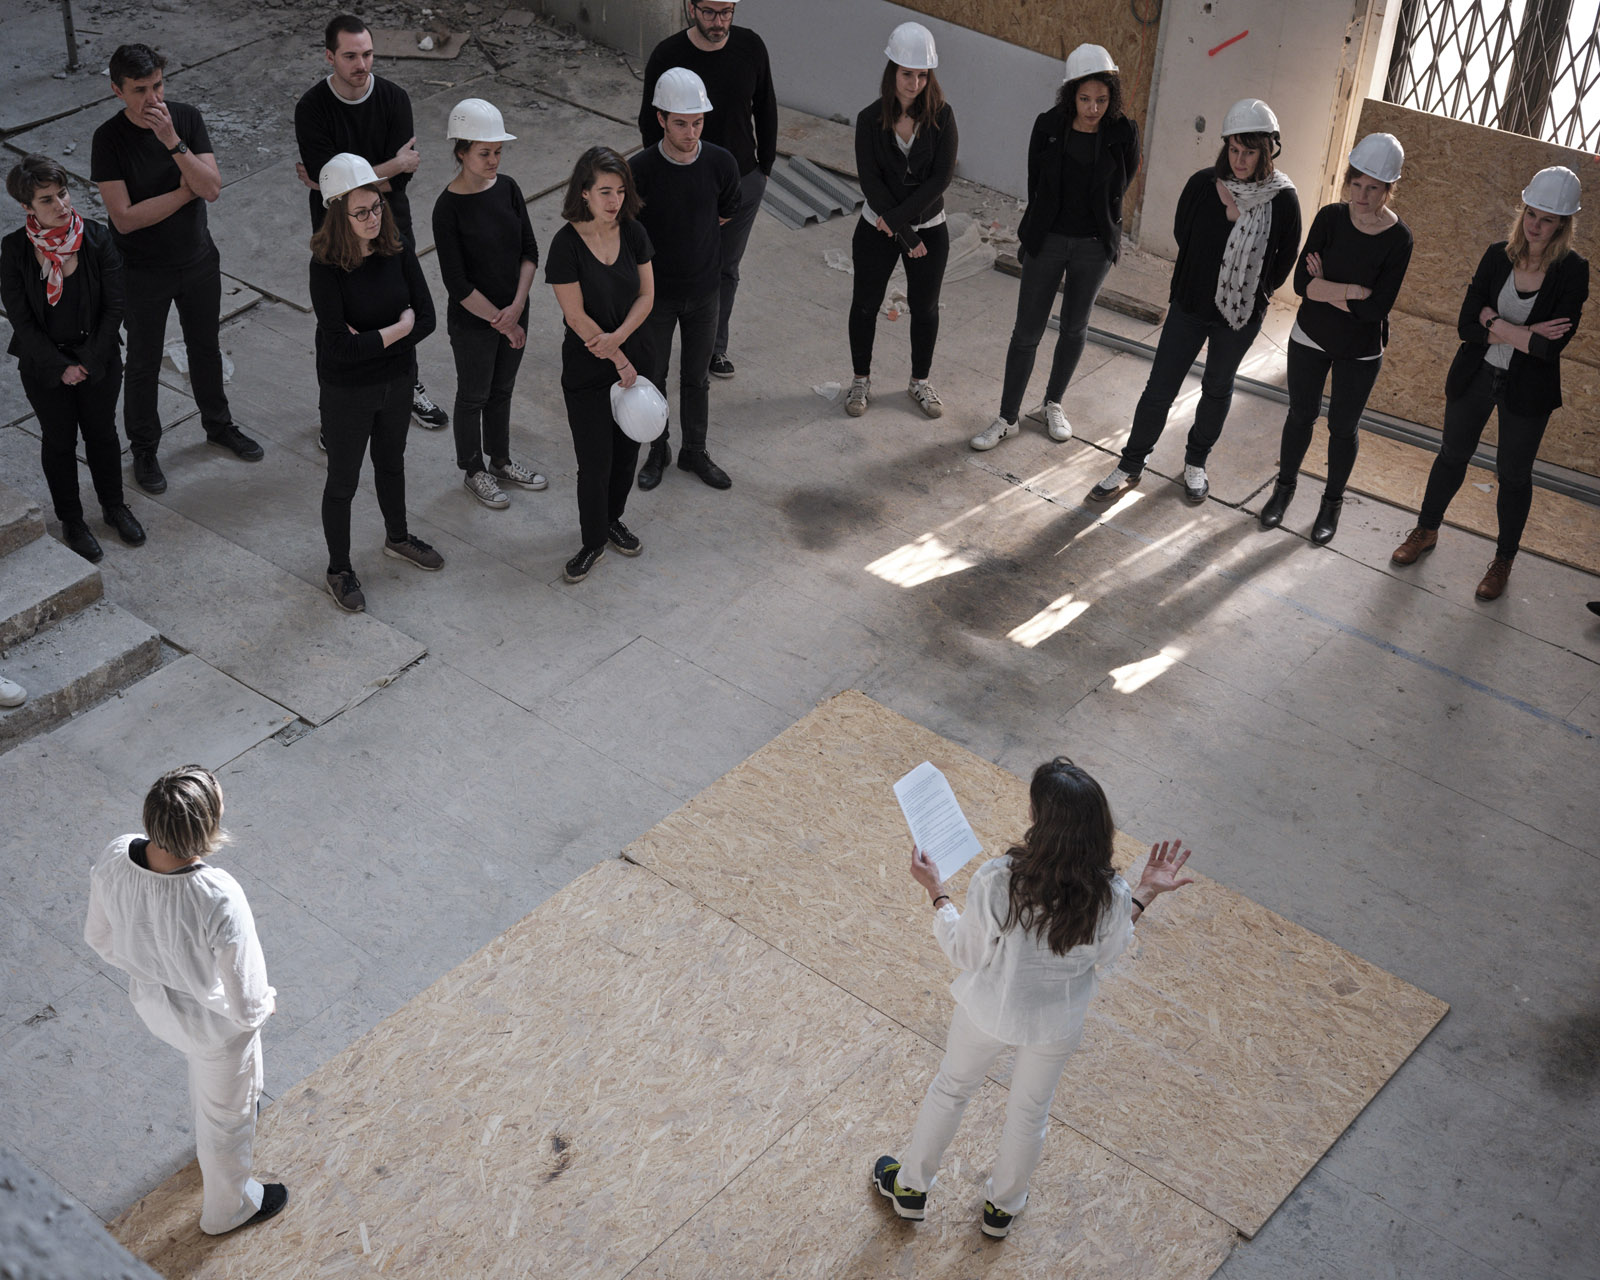 Le MAM en chantier 20 mai 2019
Avec la chorégraphe Annick Charlot et ses danseurs et les architectes d'H2o.